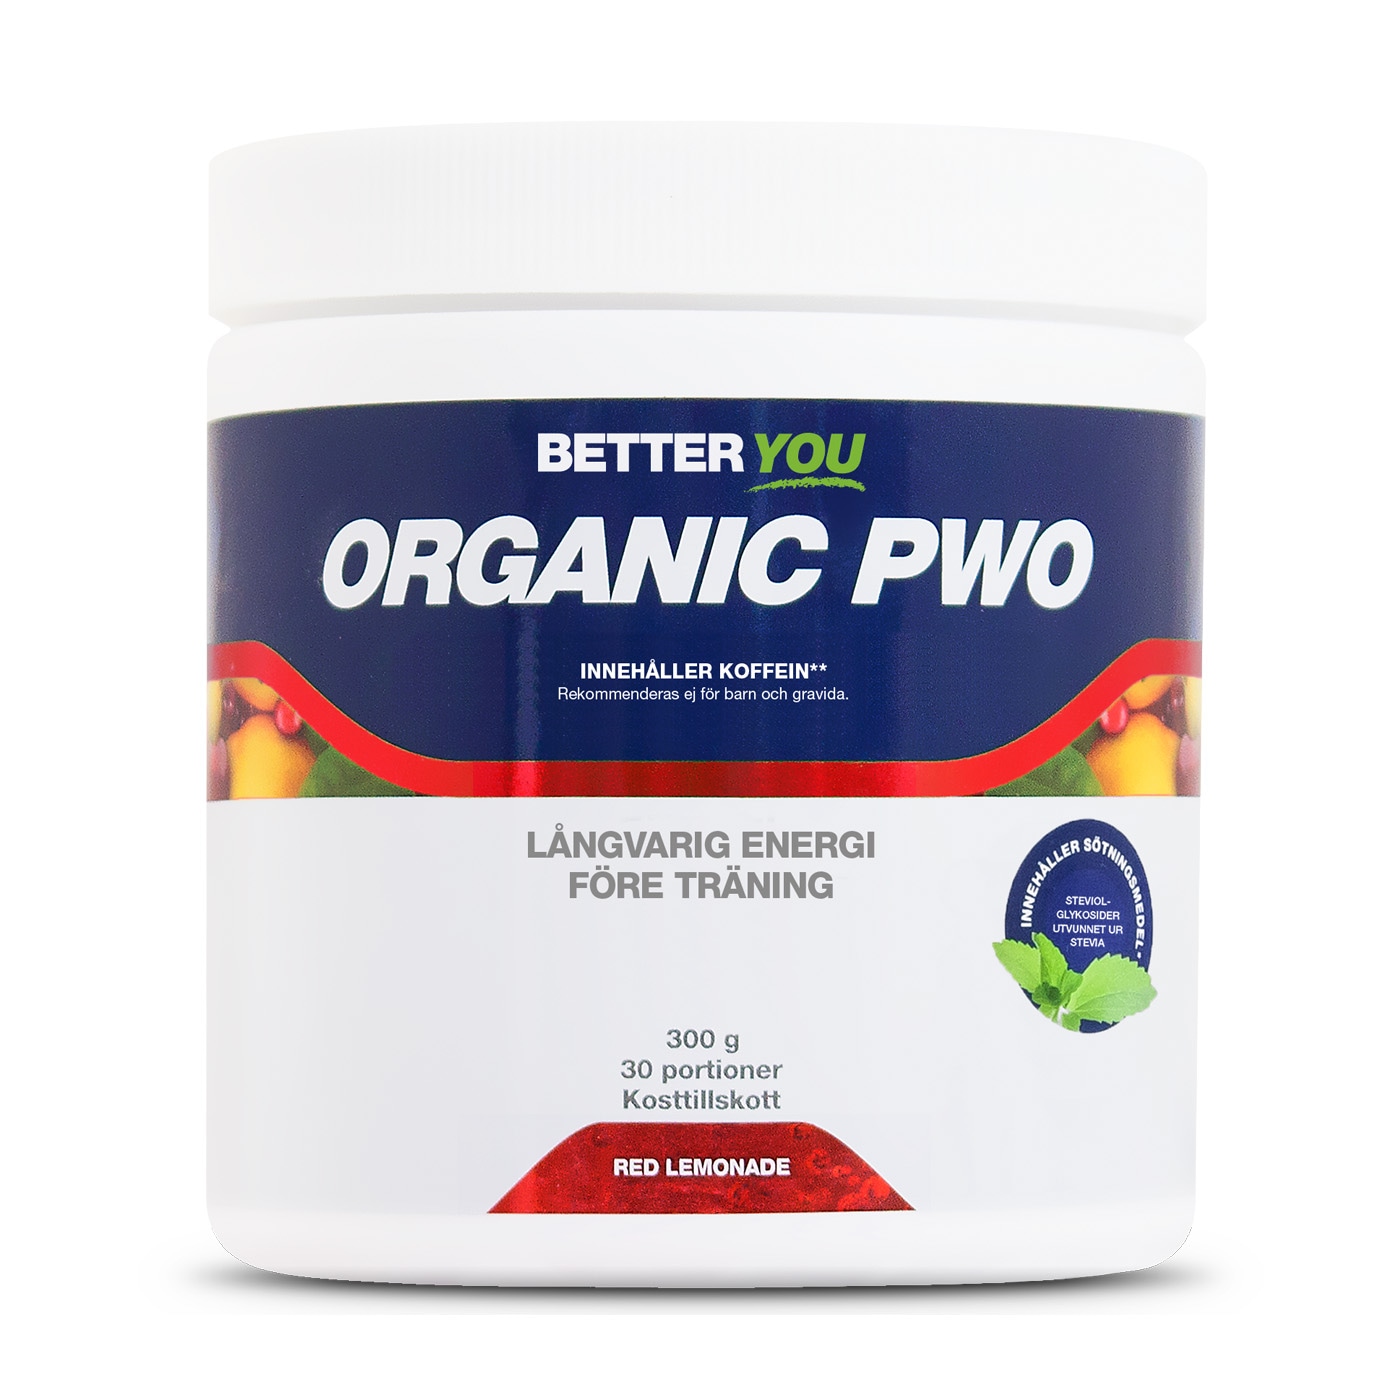 Organic PWO